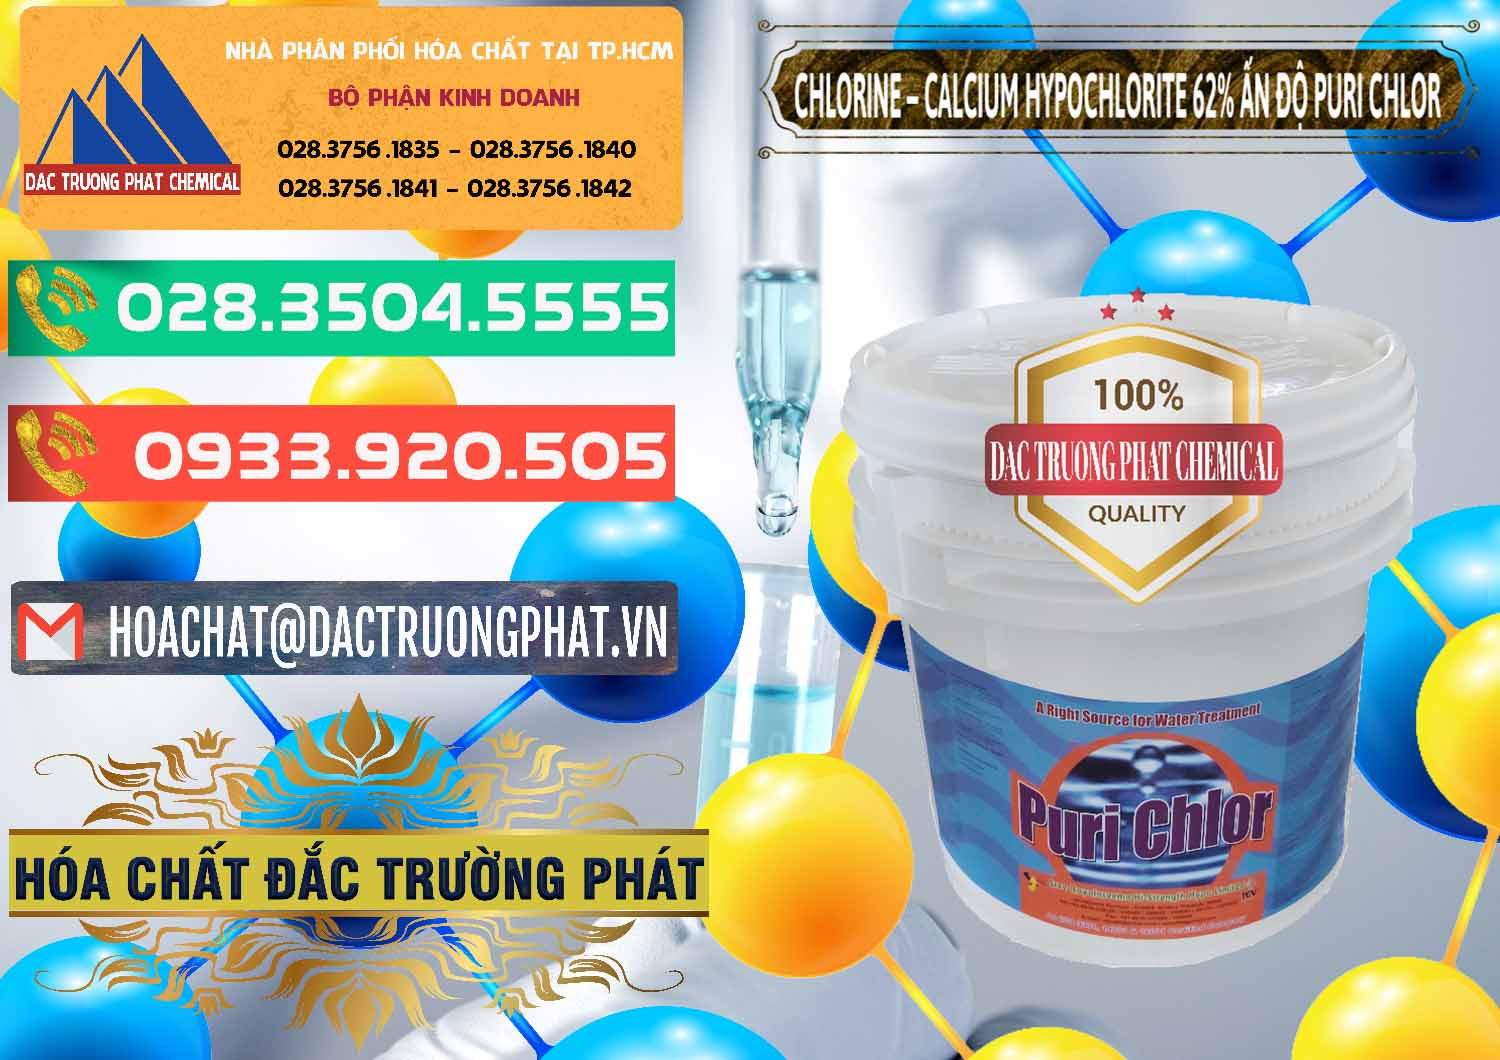 Nơi chuyên bán & phân phối Chlorine – Clorin 62% Puri Chlo Ấn Độ India - 0052 - Công ty chuyên phân phối và nhập khẩu hóa chất tại TP.HCM - congtyhoachat.com.vn